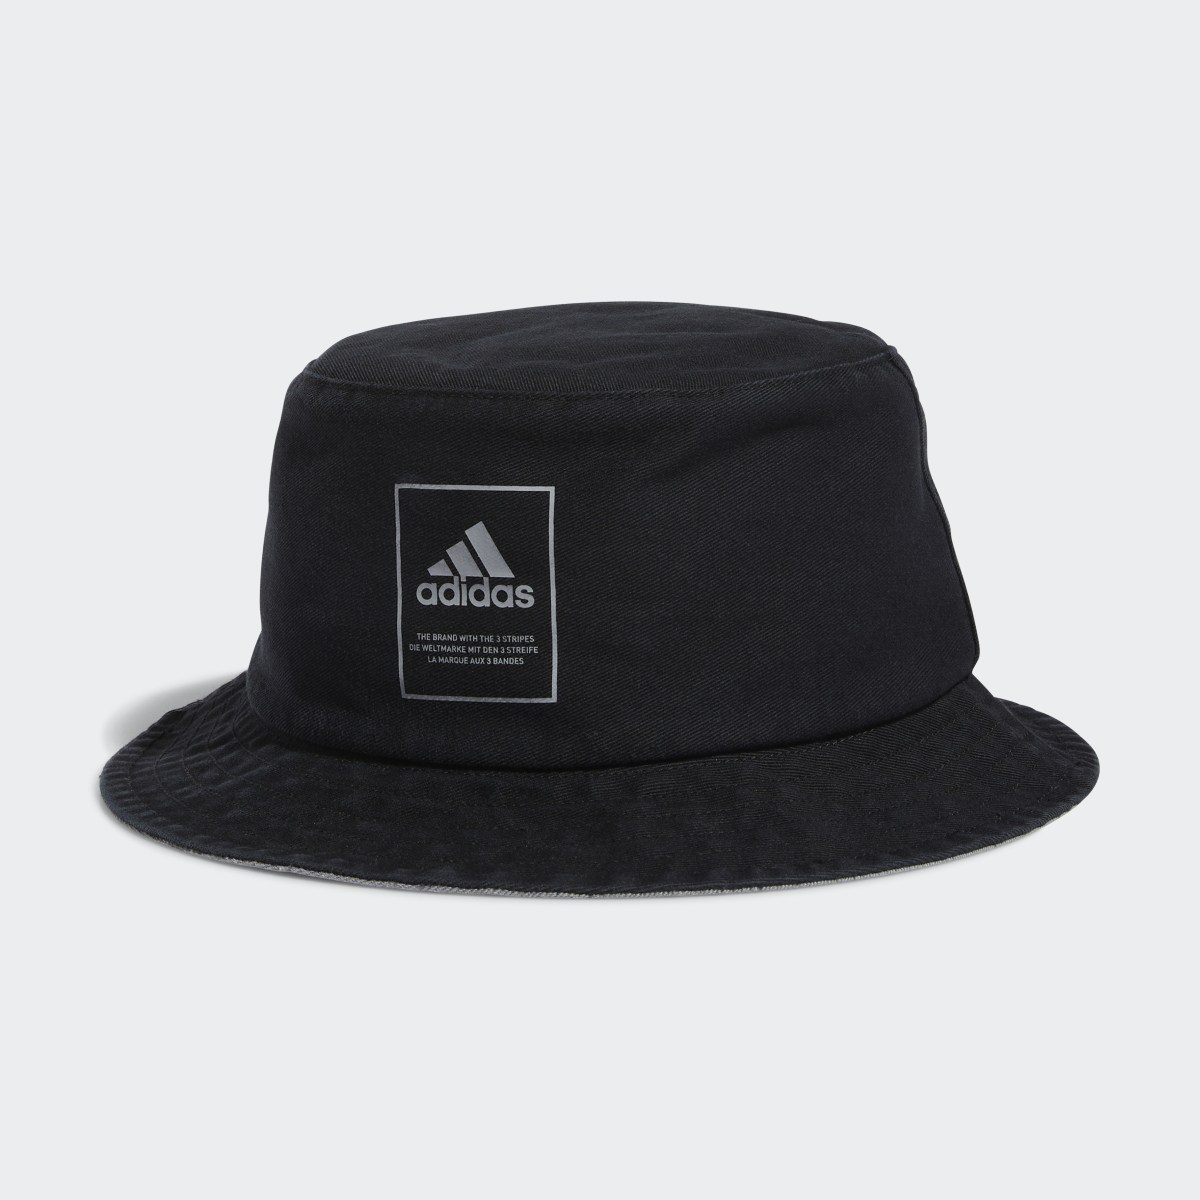 Adidas Lifestyle Washed Bucket Hat. 4